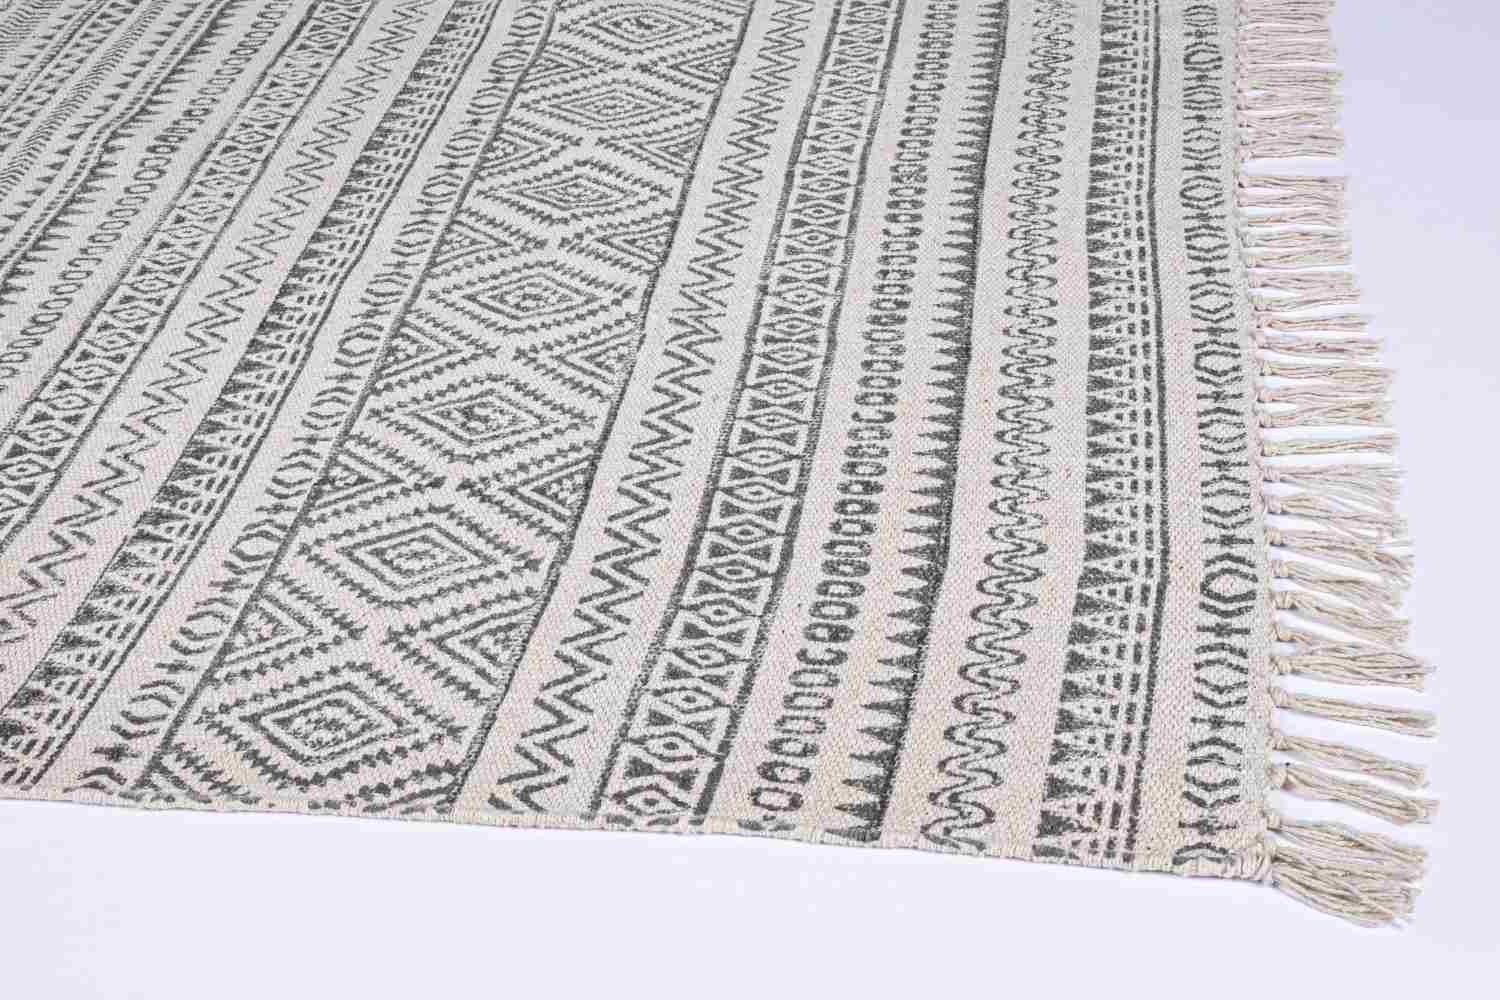 Der Teppich Giordania überzeugt mit seinem klassischen Design. Gefertigt wurde die Vorderseite aus 100% Baumwolle. Der Teppich besitzt einen grauen Farbton und die Maße von 160x230 cm.